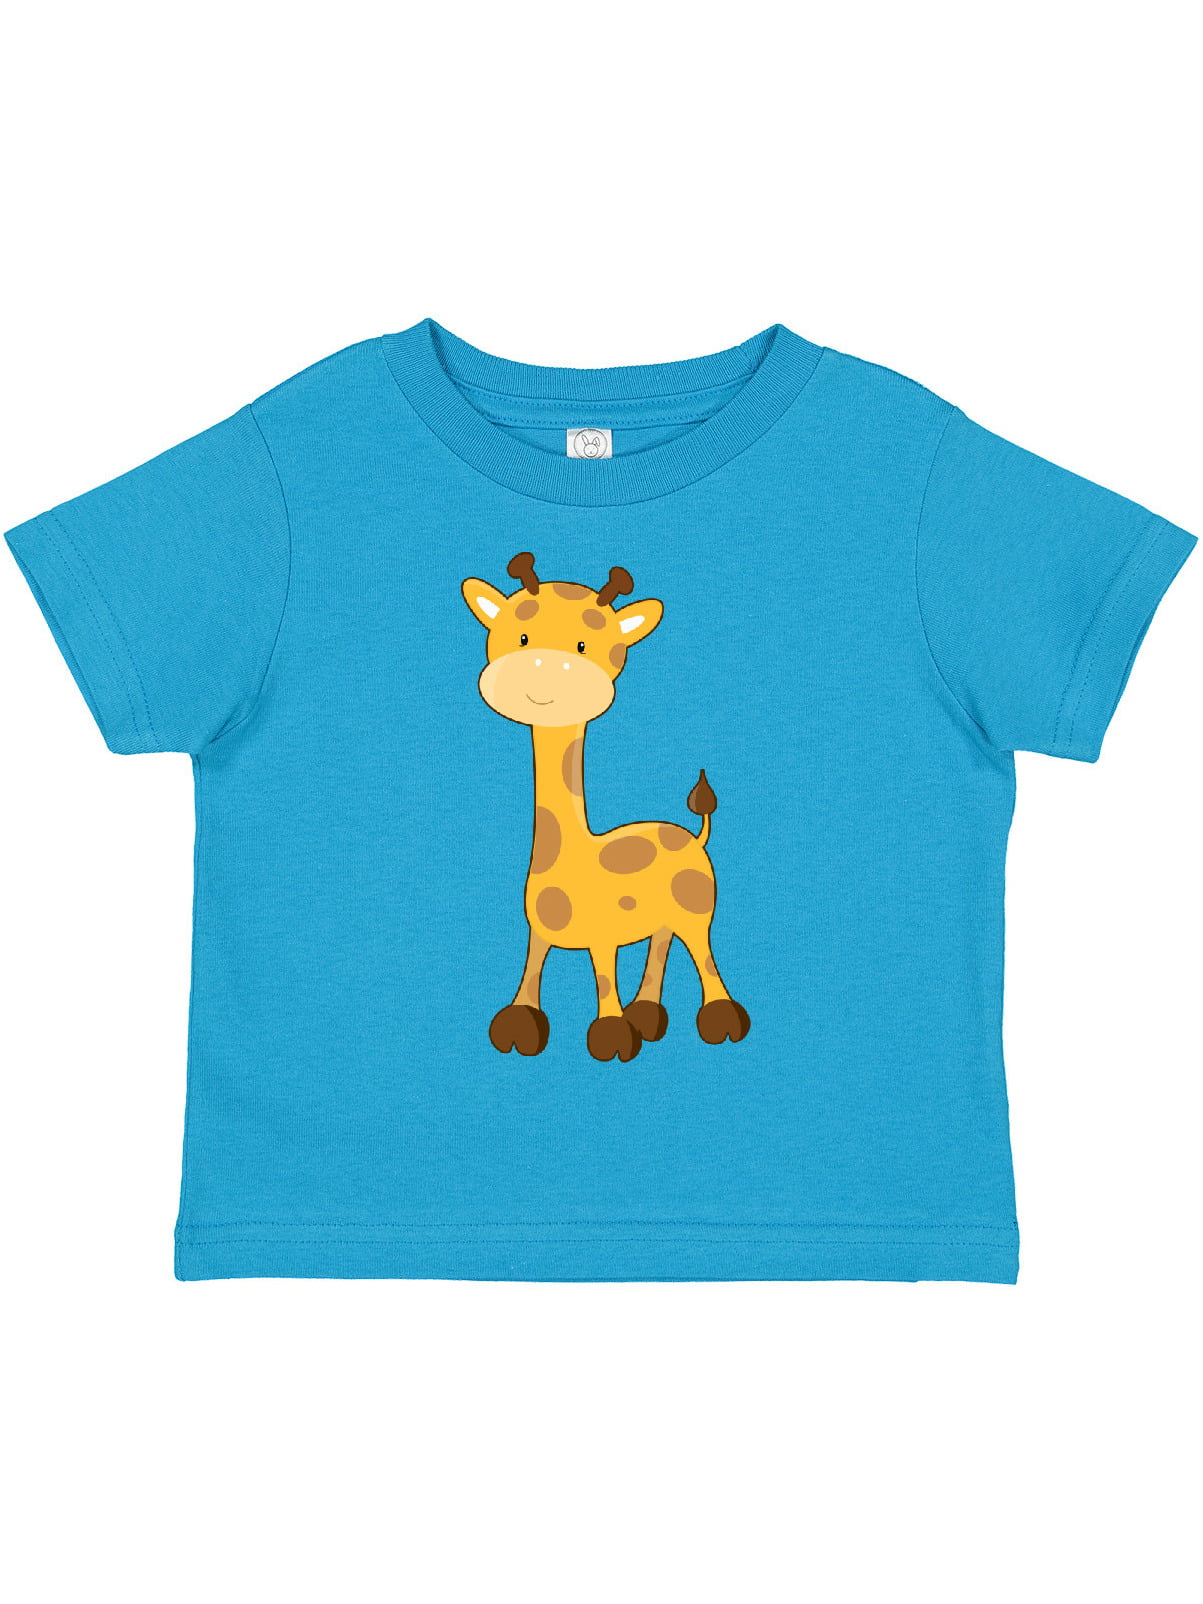 got giraffe Kids Tee Shirt Pick Size & Color 2T XL 